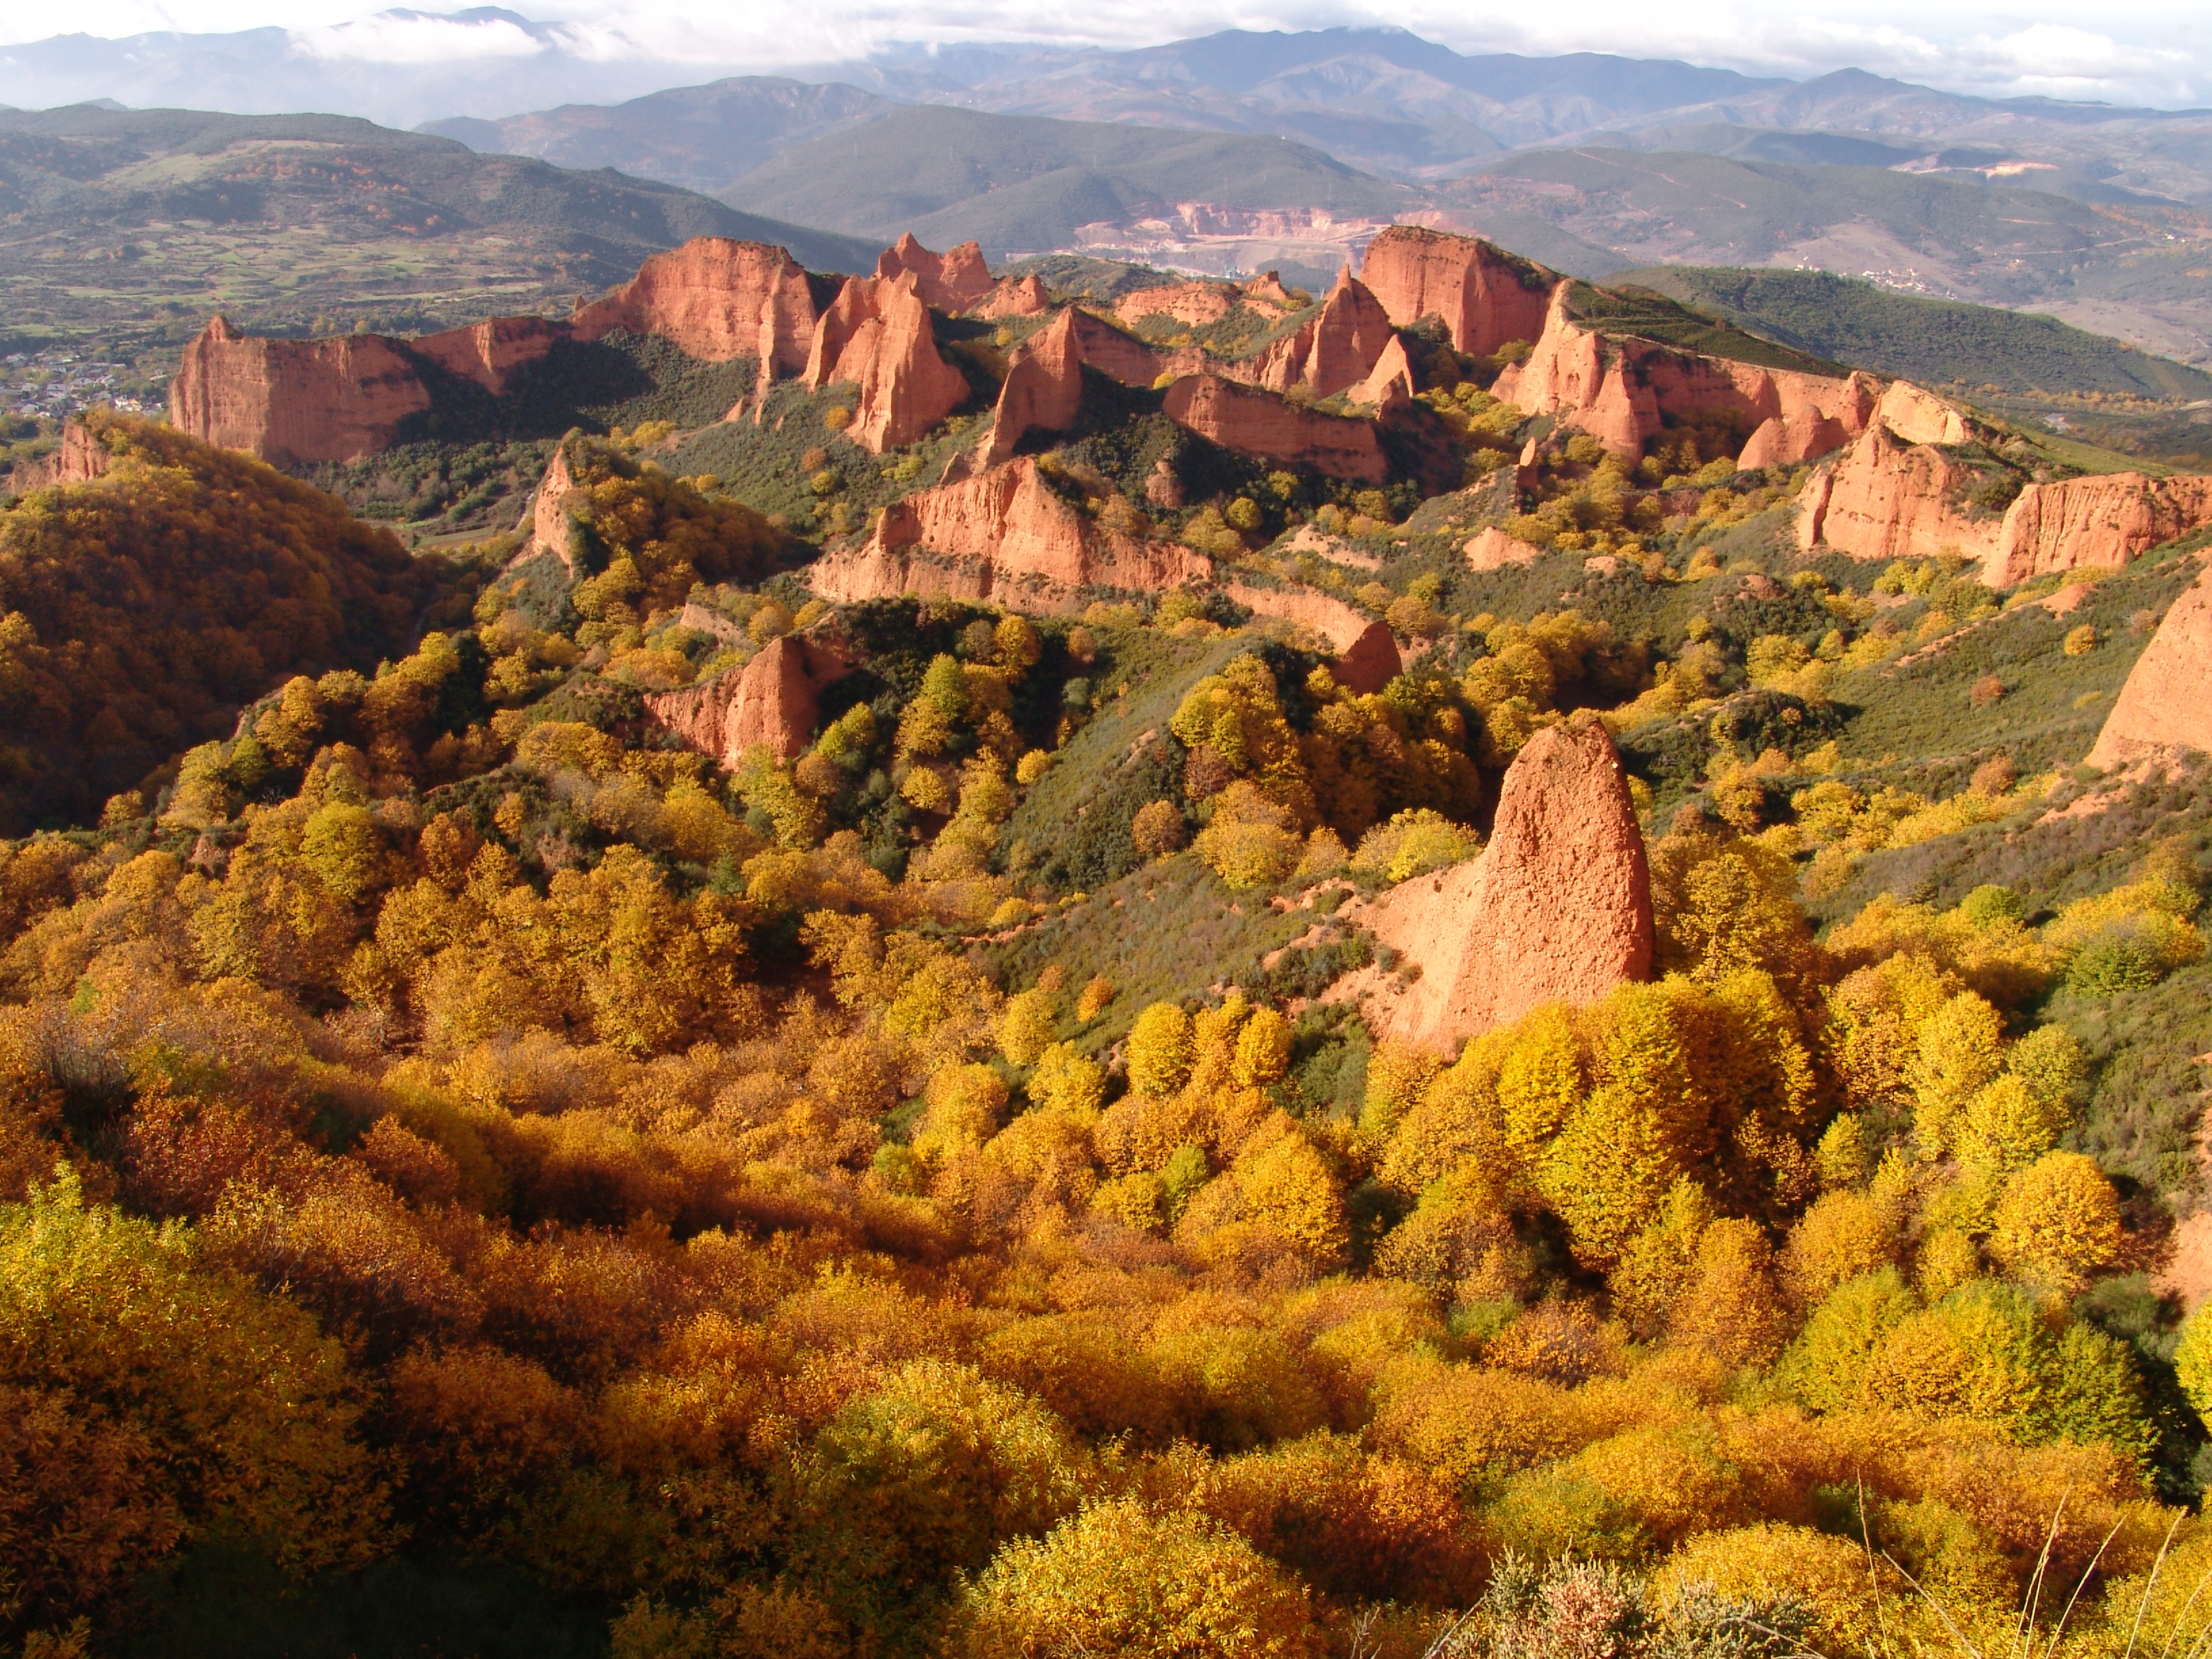 billig efterskrift Bering strædet Top 7 natural wonders in Spain | CNN Travel